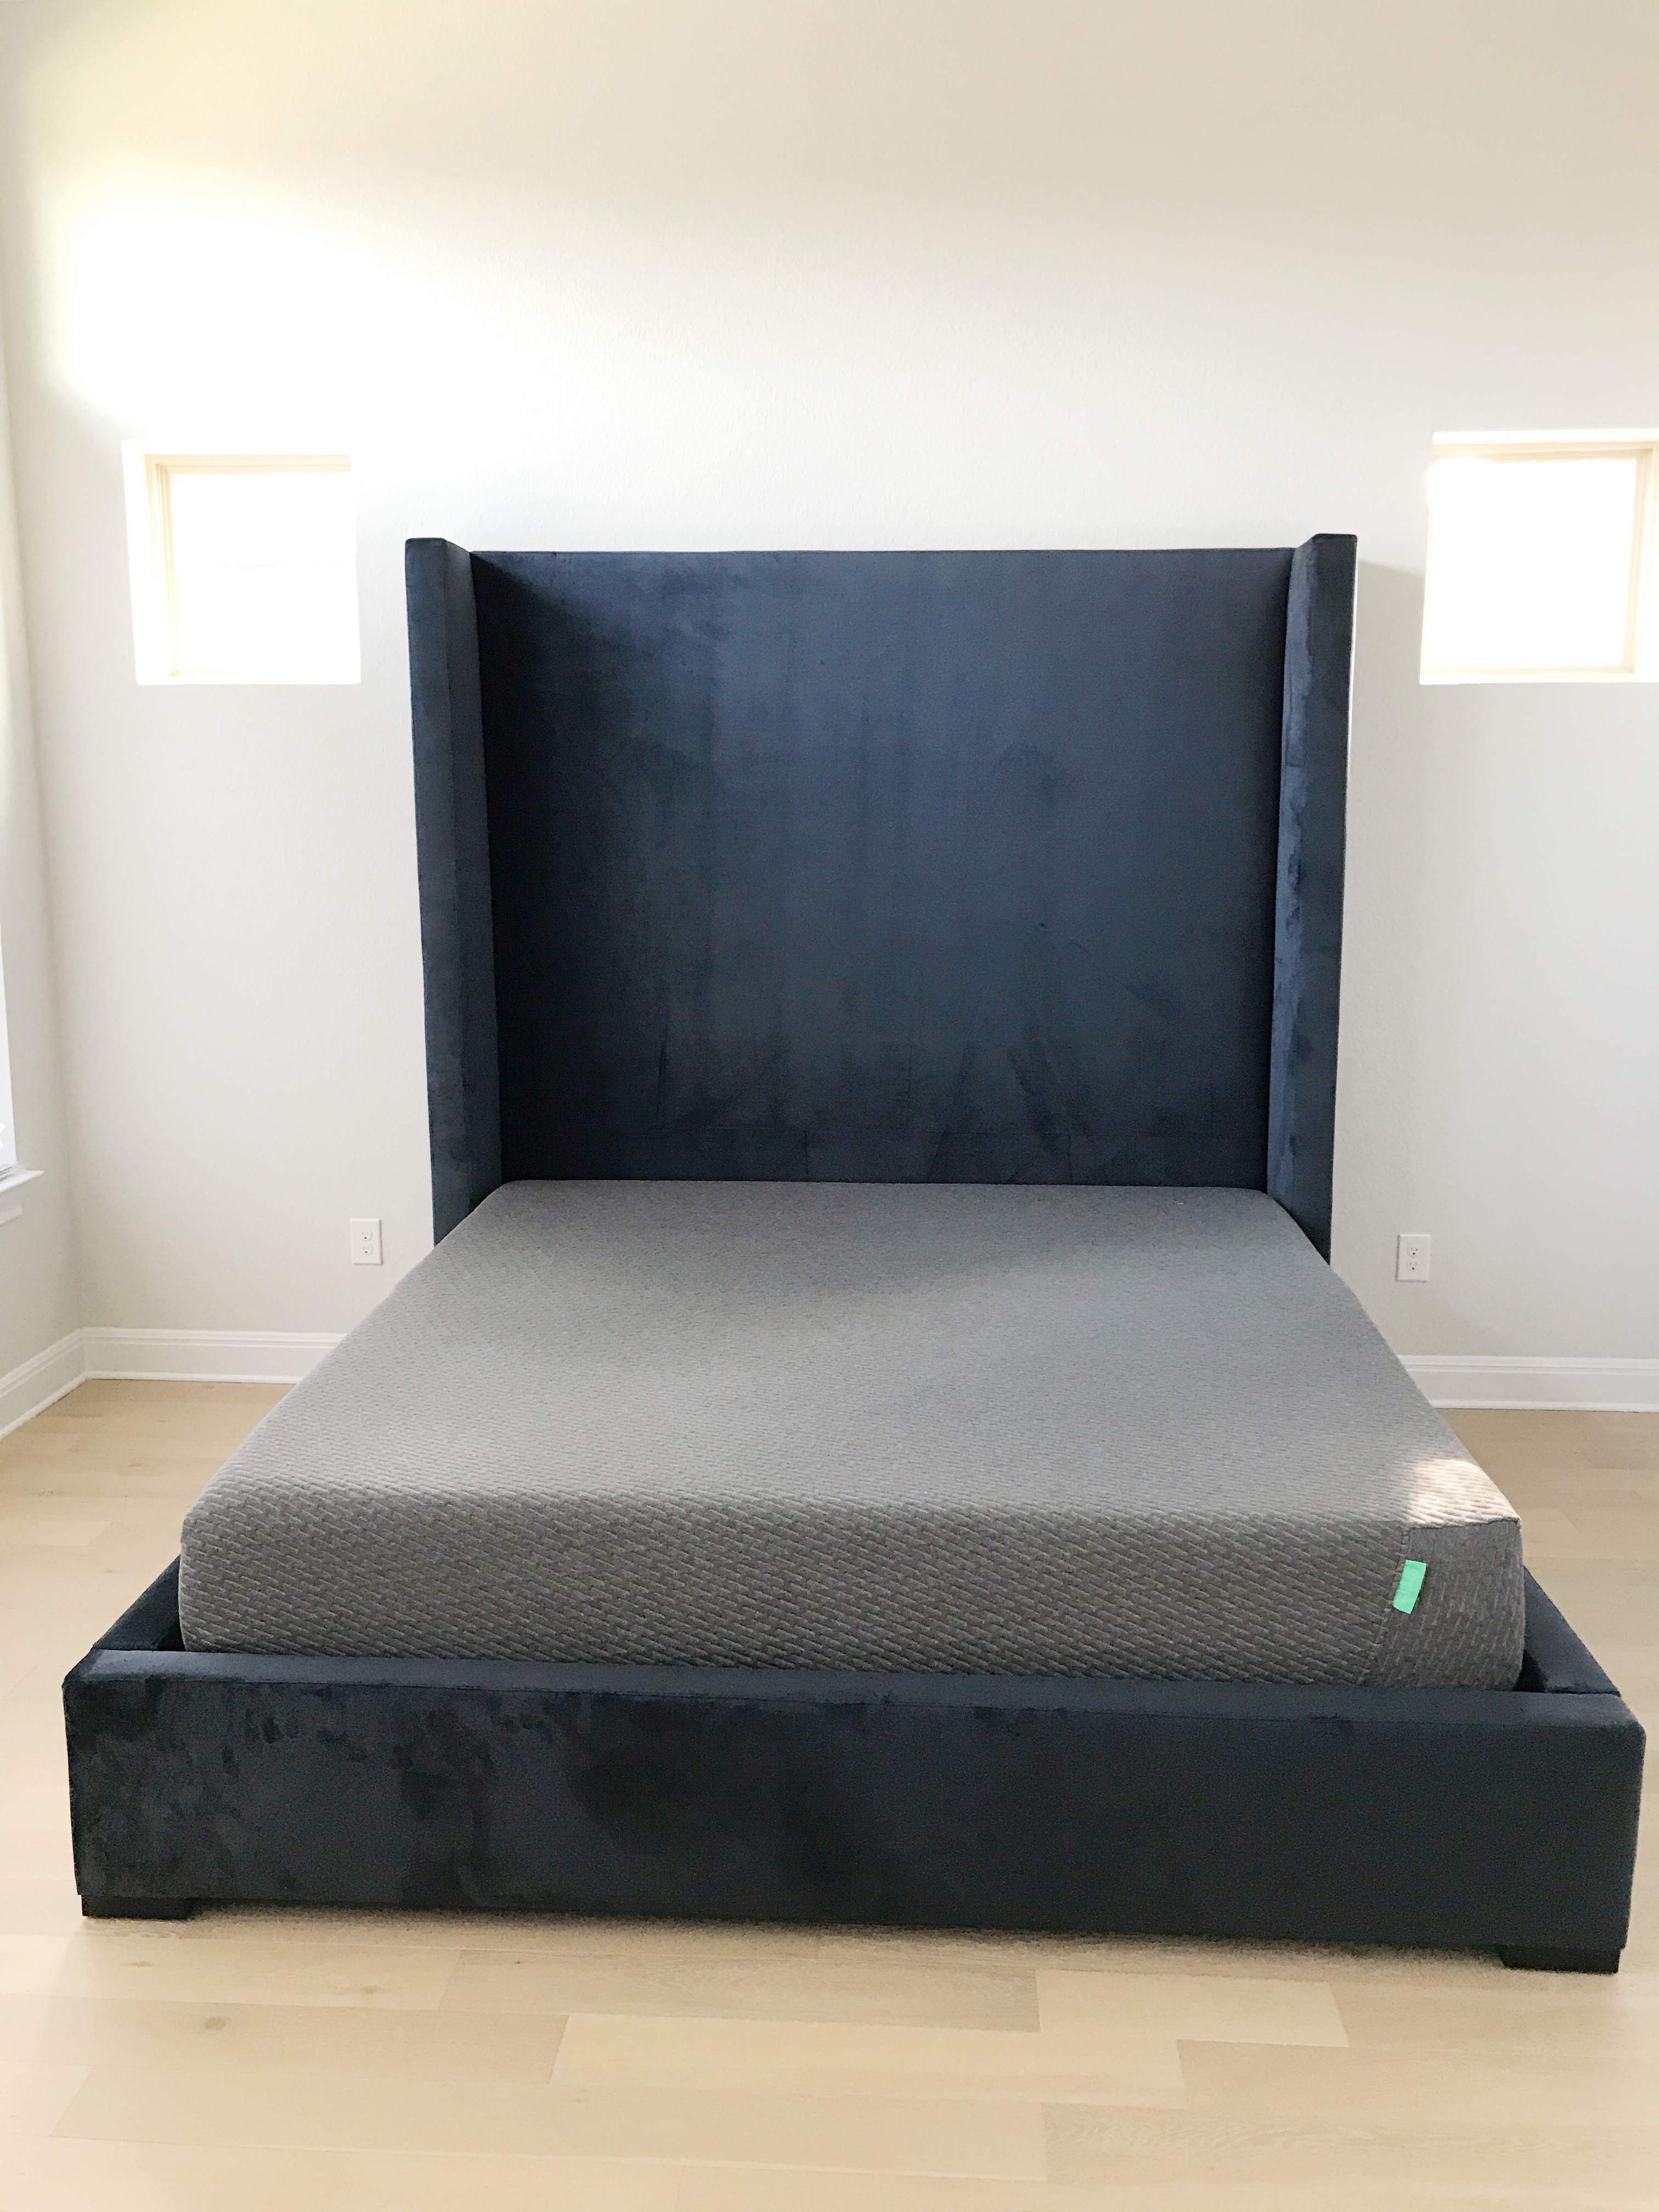 Restoration Hardware-inspired custom bed for less